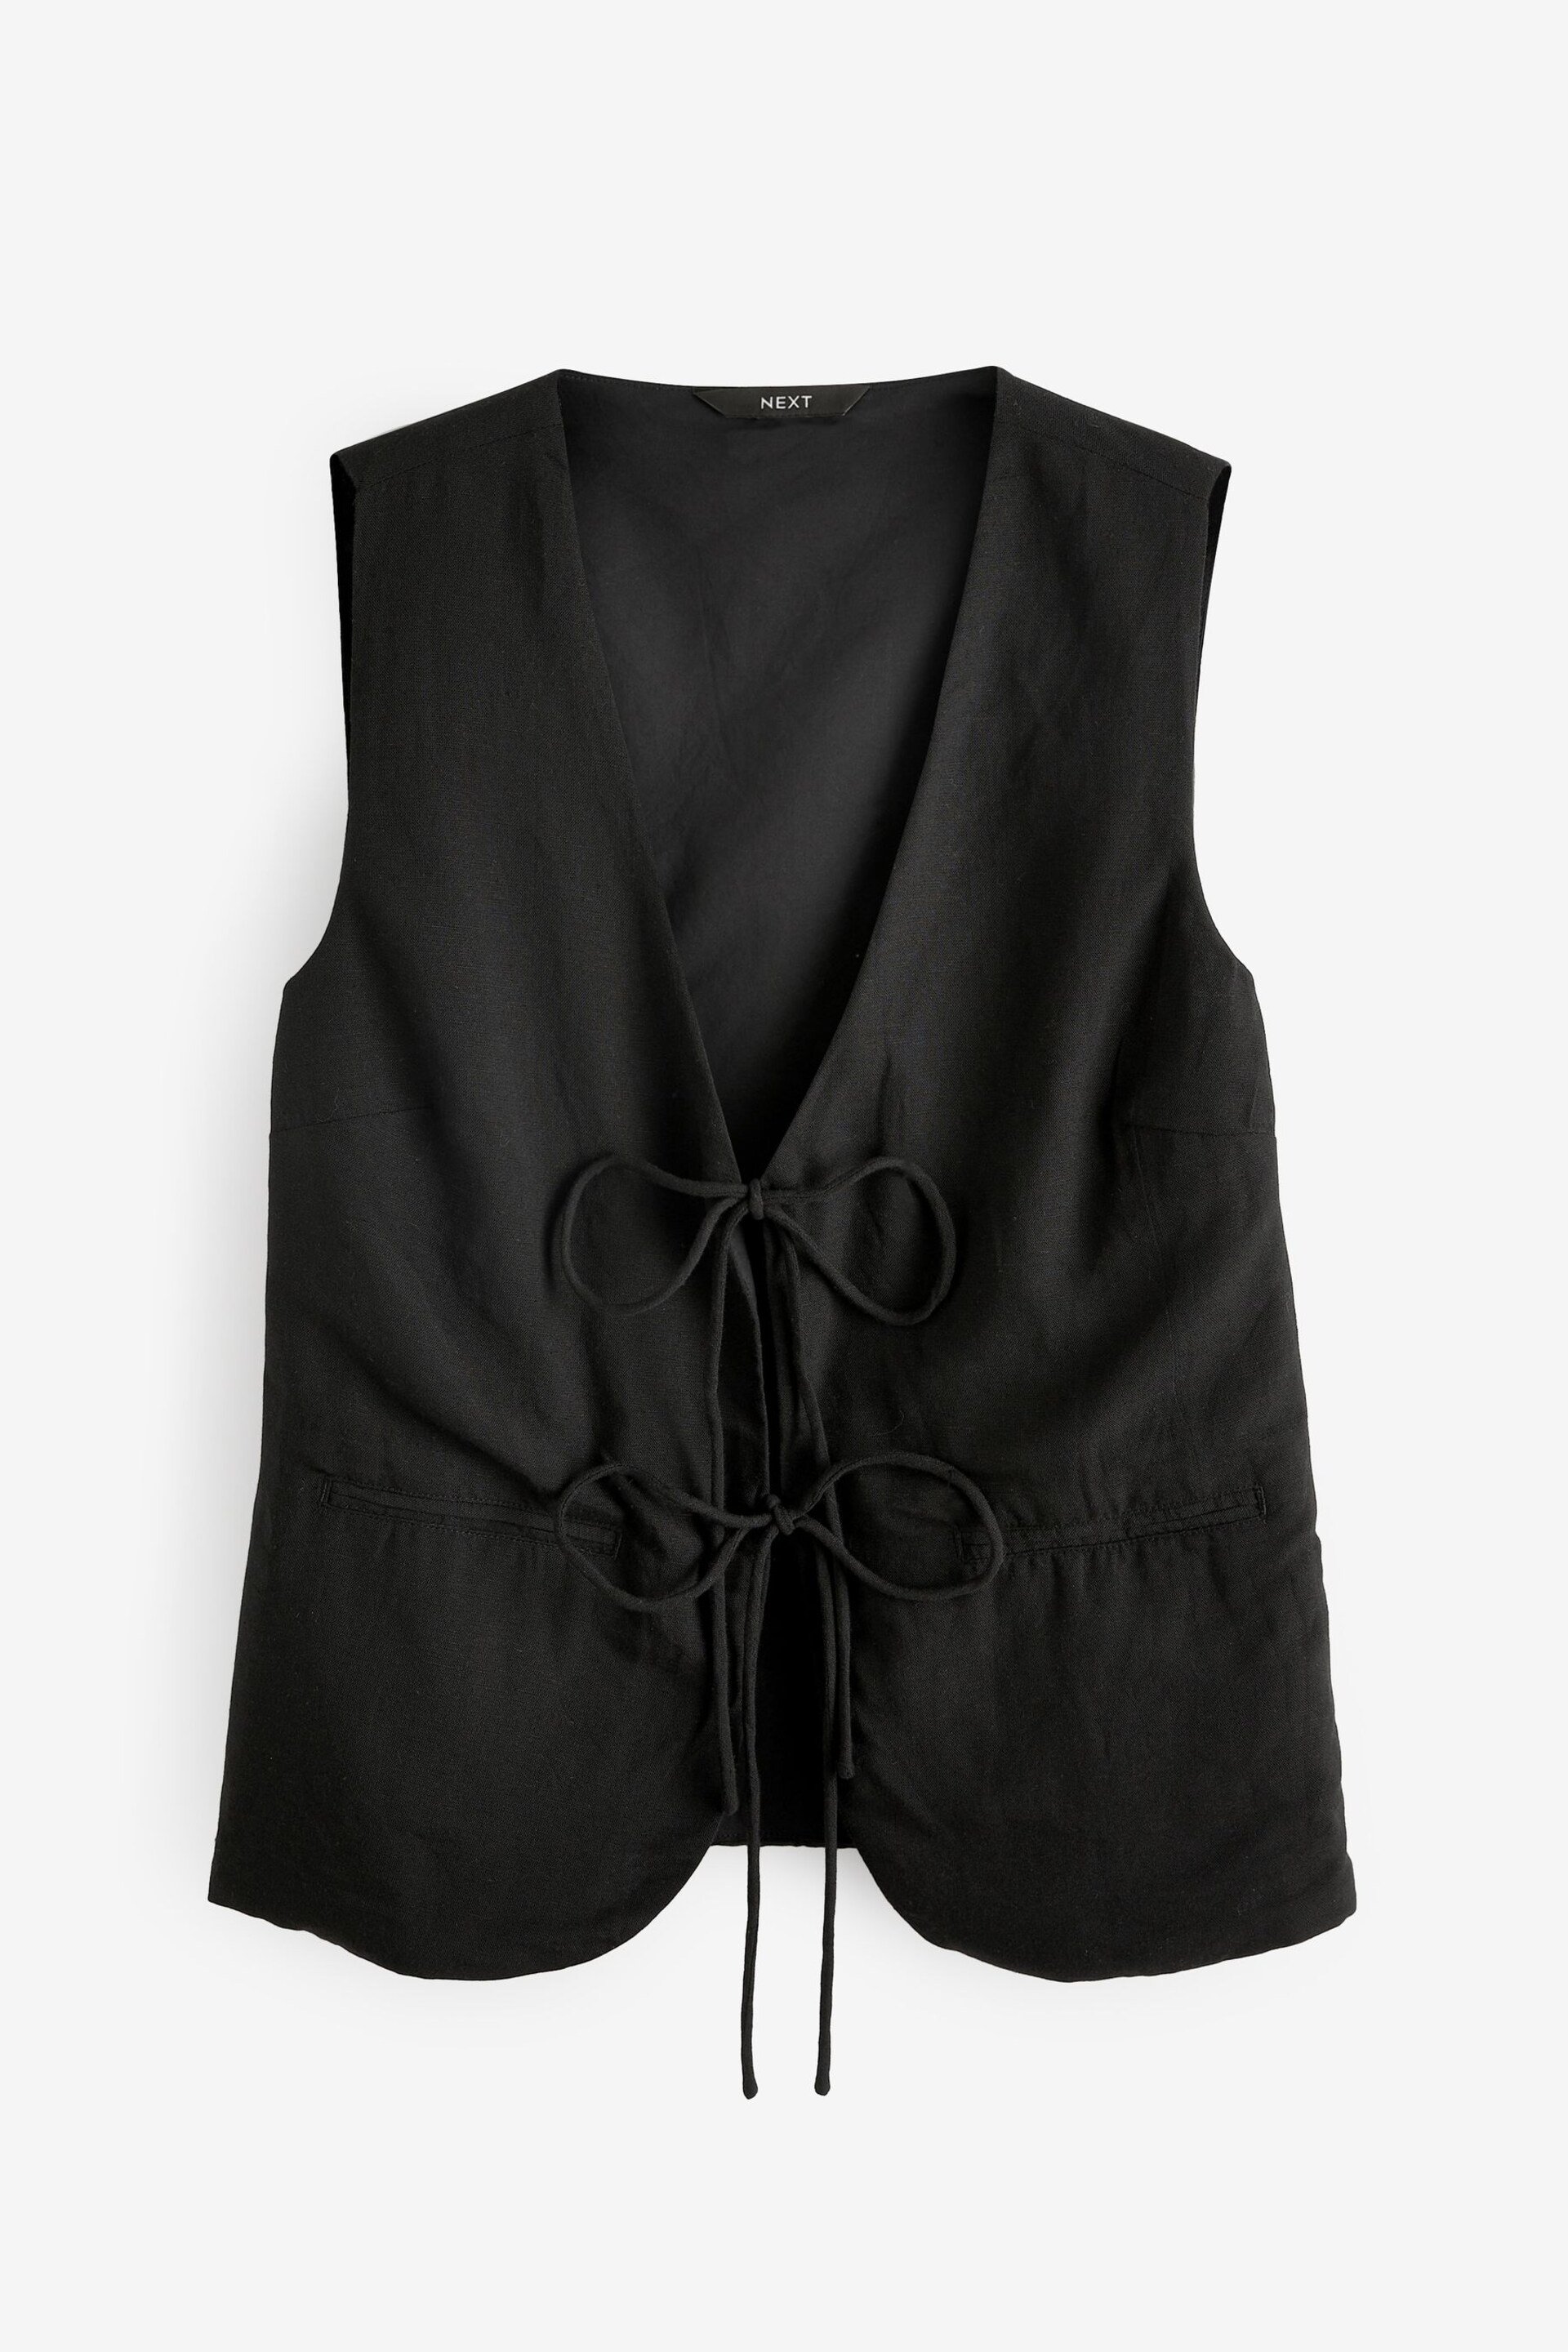 Black Linen Blend Tie Front Waistcoat - Image 5 of 6